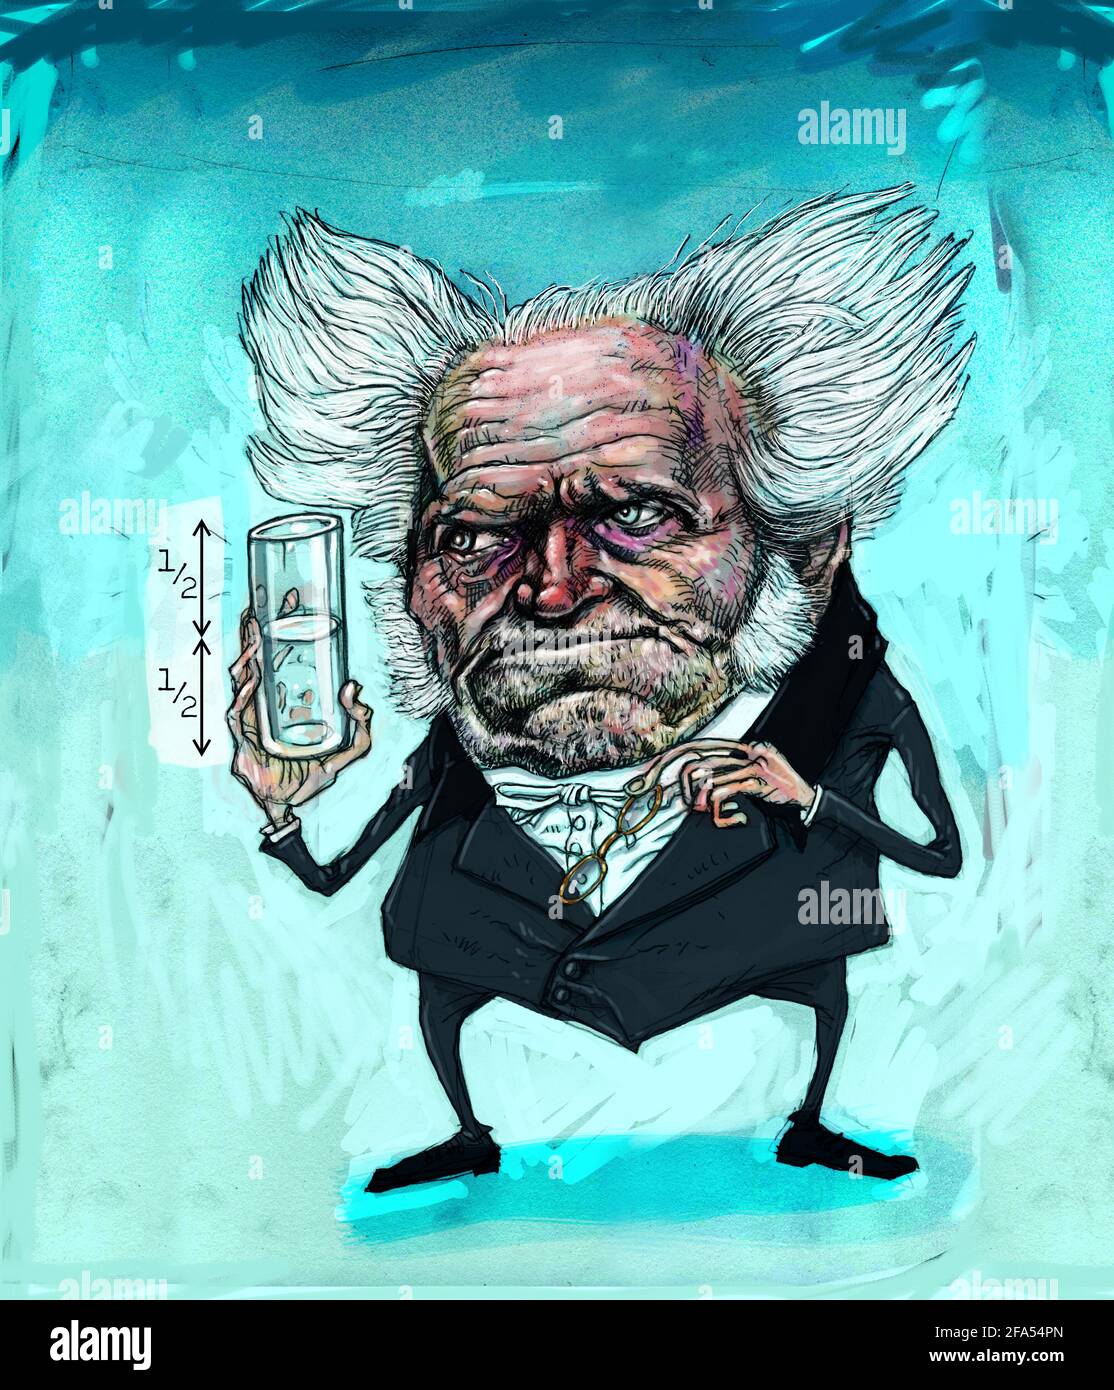 Illustration humoristique de caricature du philosophe allemand Arthur Schopenhauer, tenant un verre à moitié plein d'art concept vide pessimisme contre optimisme Banque D'Images